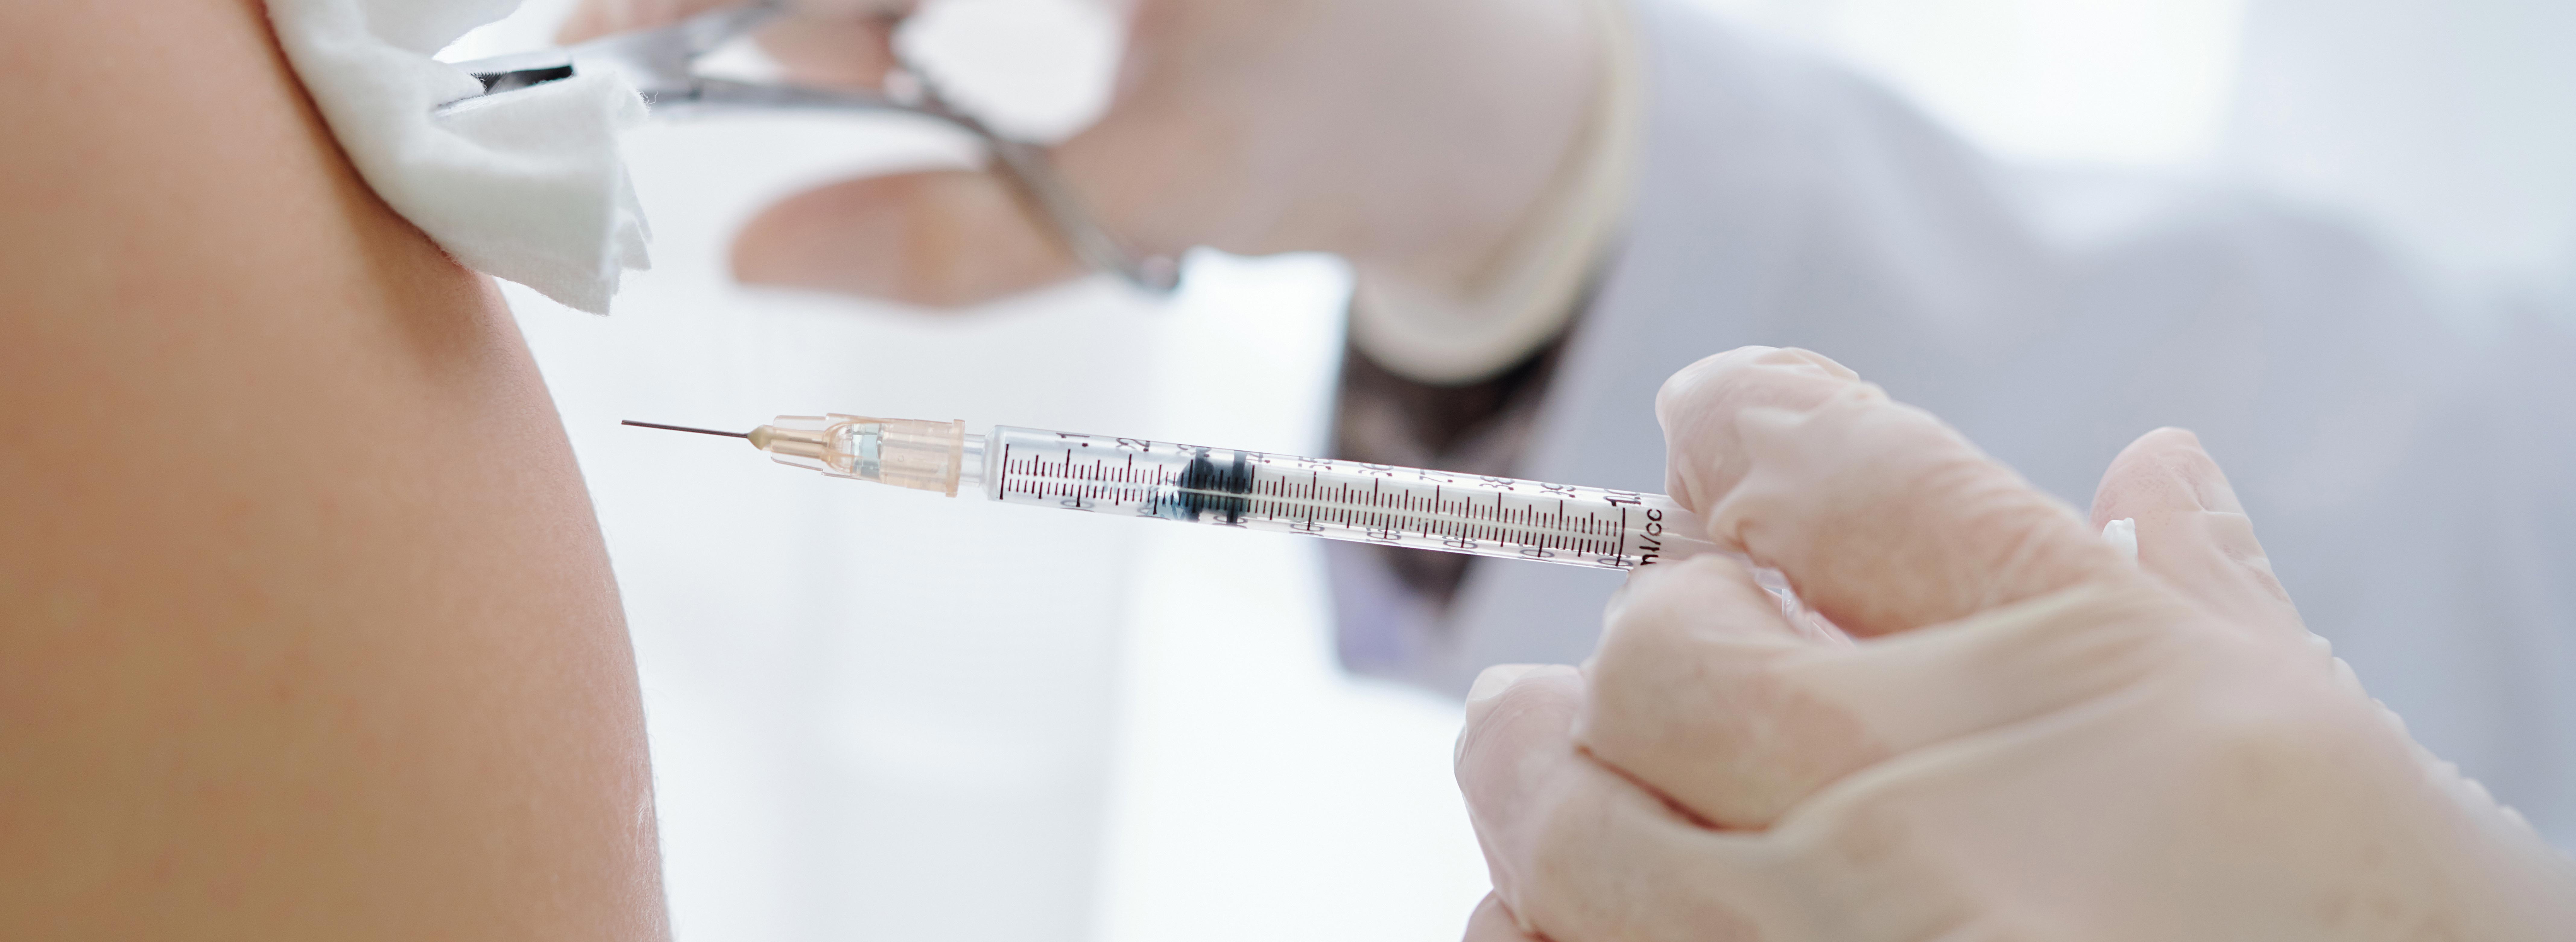 Das Bild zeigt eine Impfvergabe per Injektionsspritze